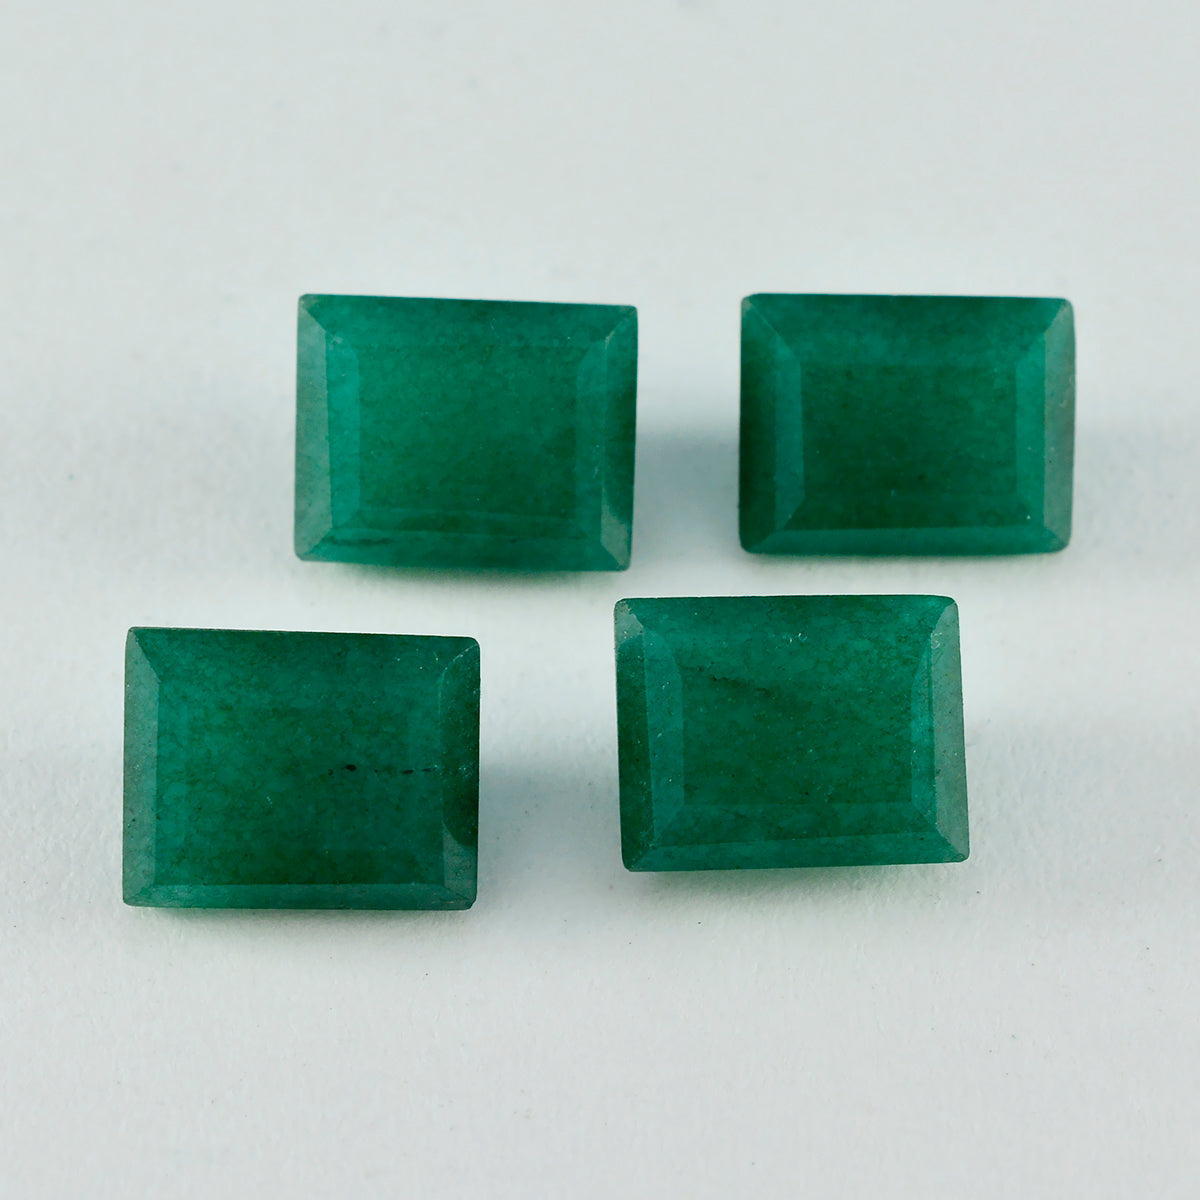 Riyogems 1 pieza jaspe verde auténtico facetado 4x4 mm forma de corazón gemas de calidad impresionante